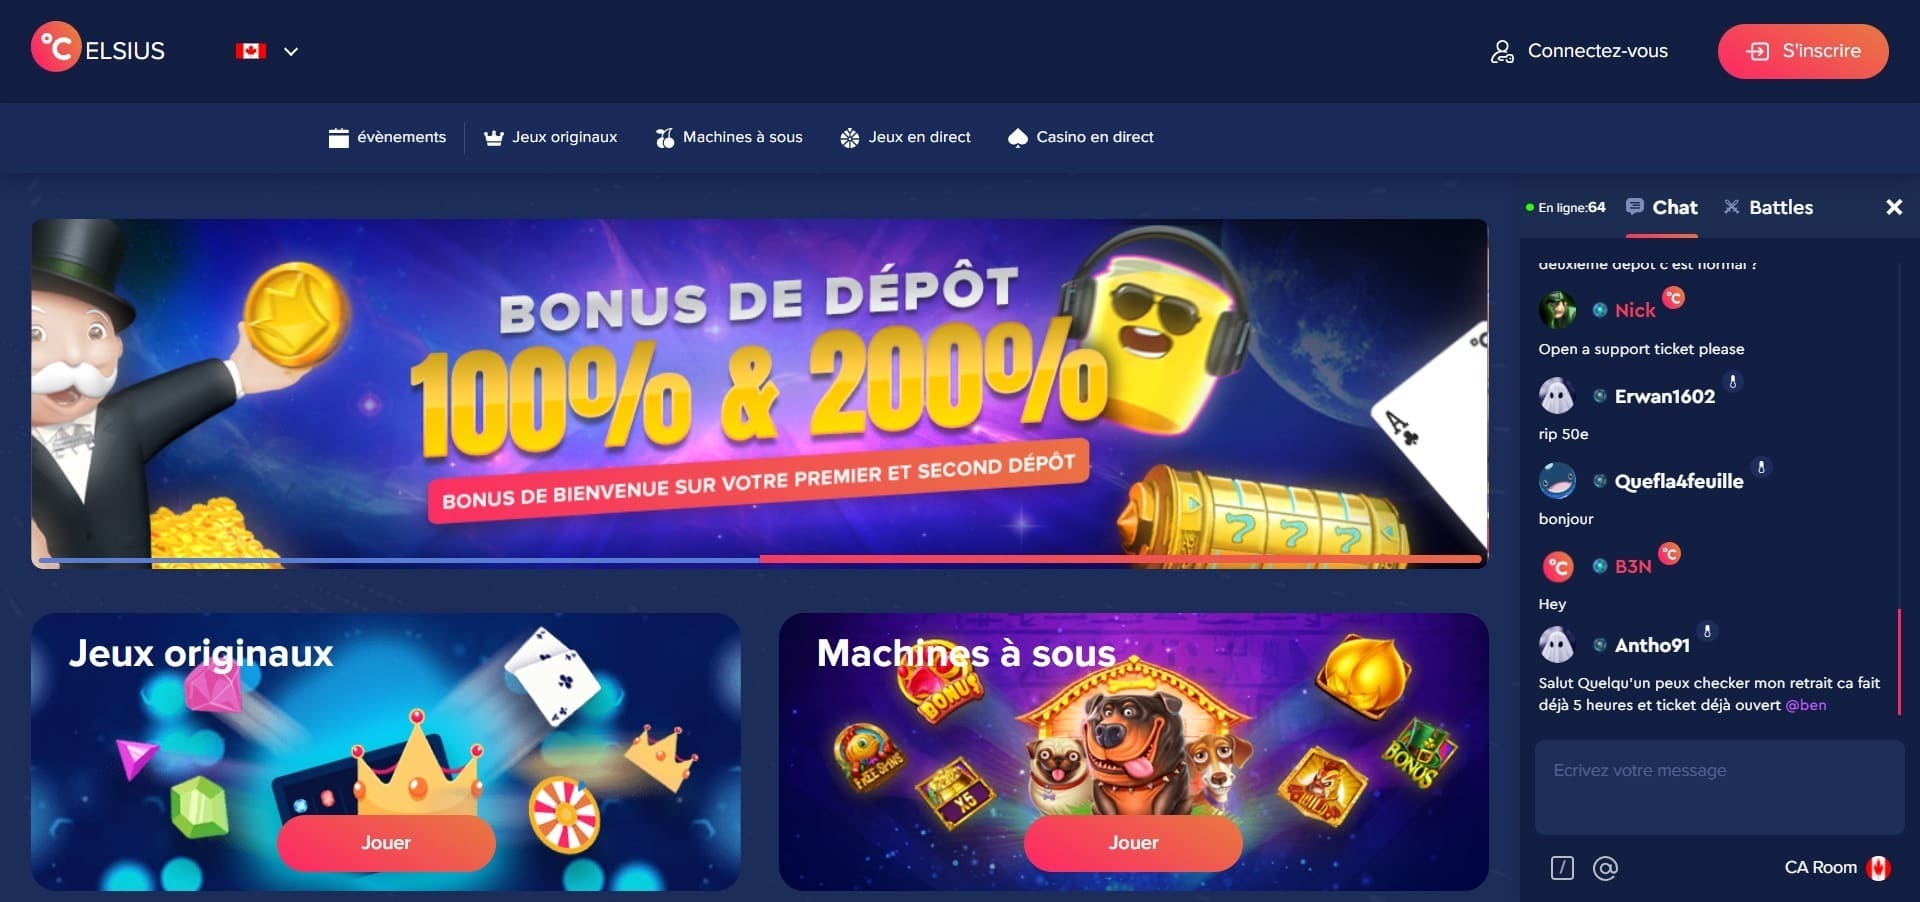 Site officiel de Celsius Casino